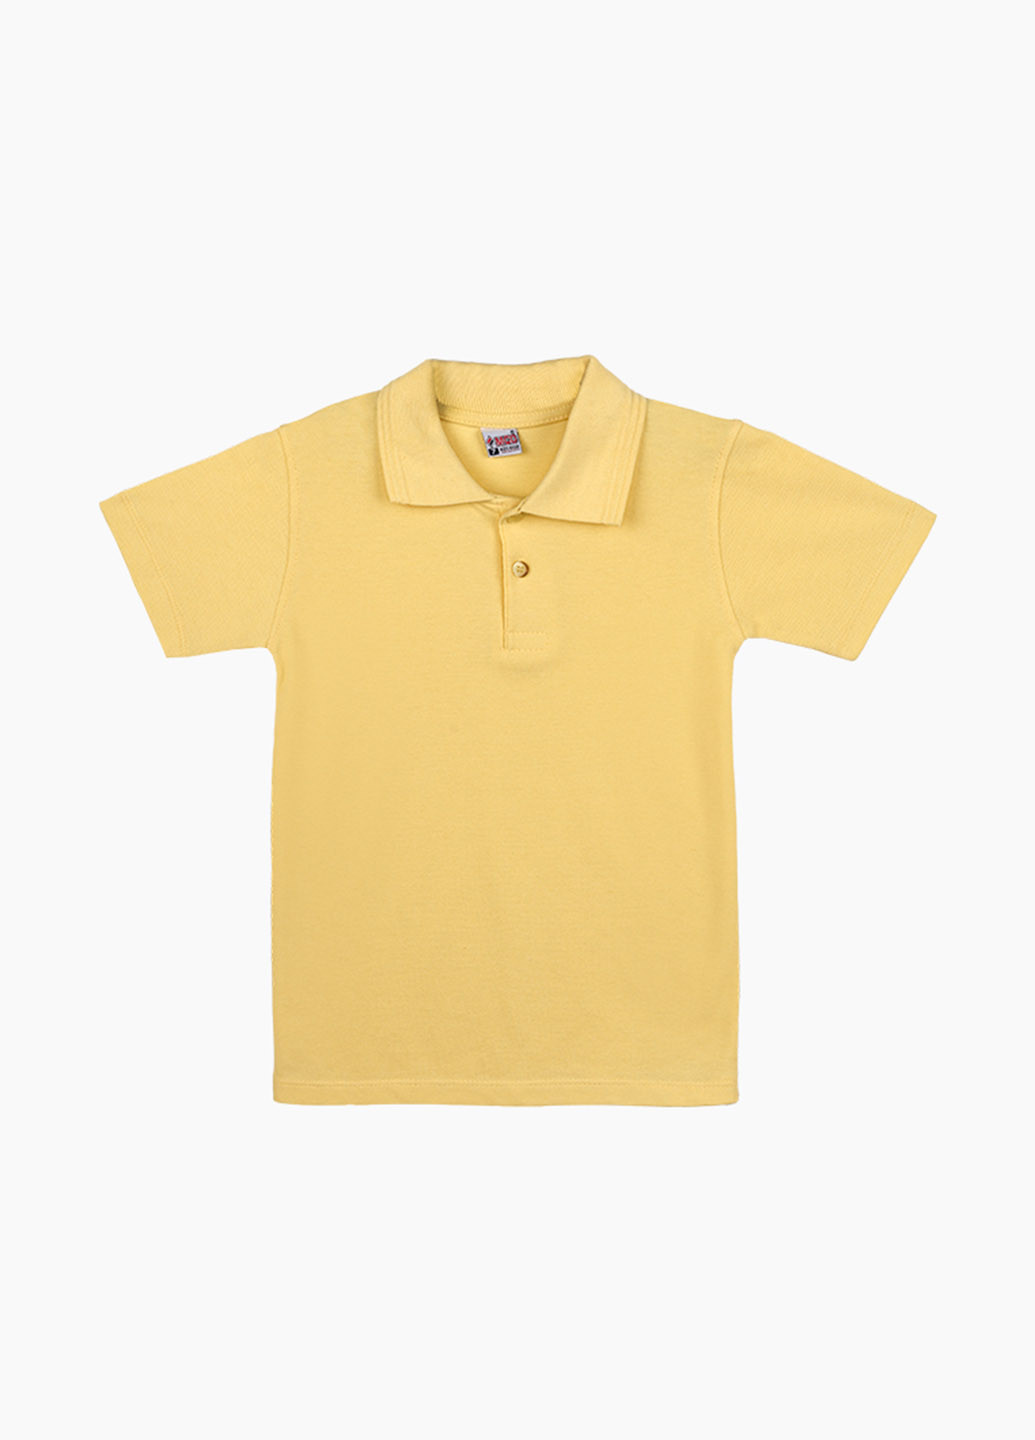 Желтая детская футболка-поло для мальчика Pitiki kids однотонная